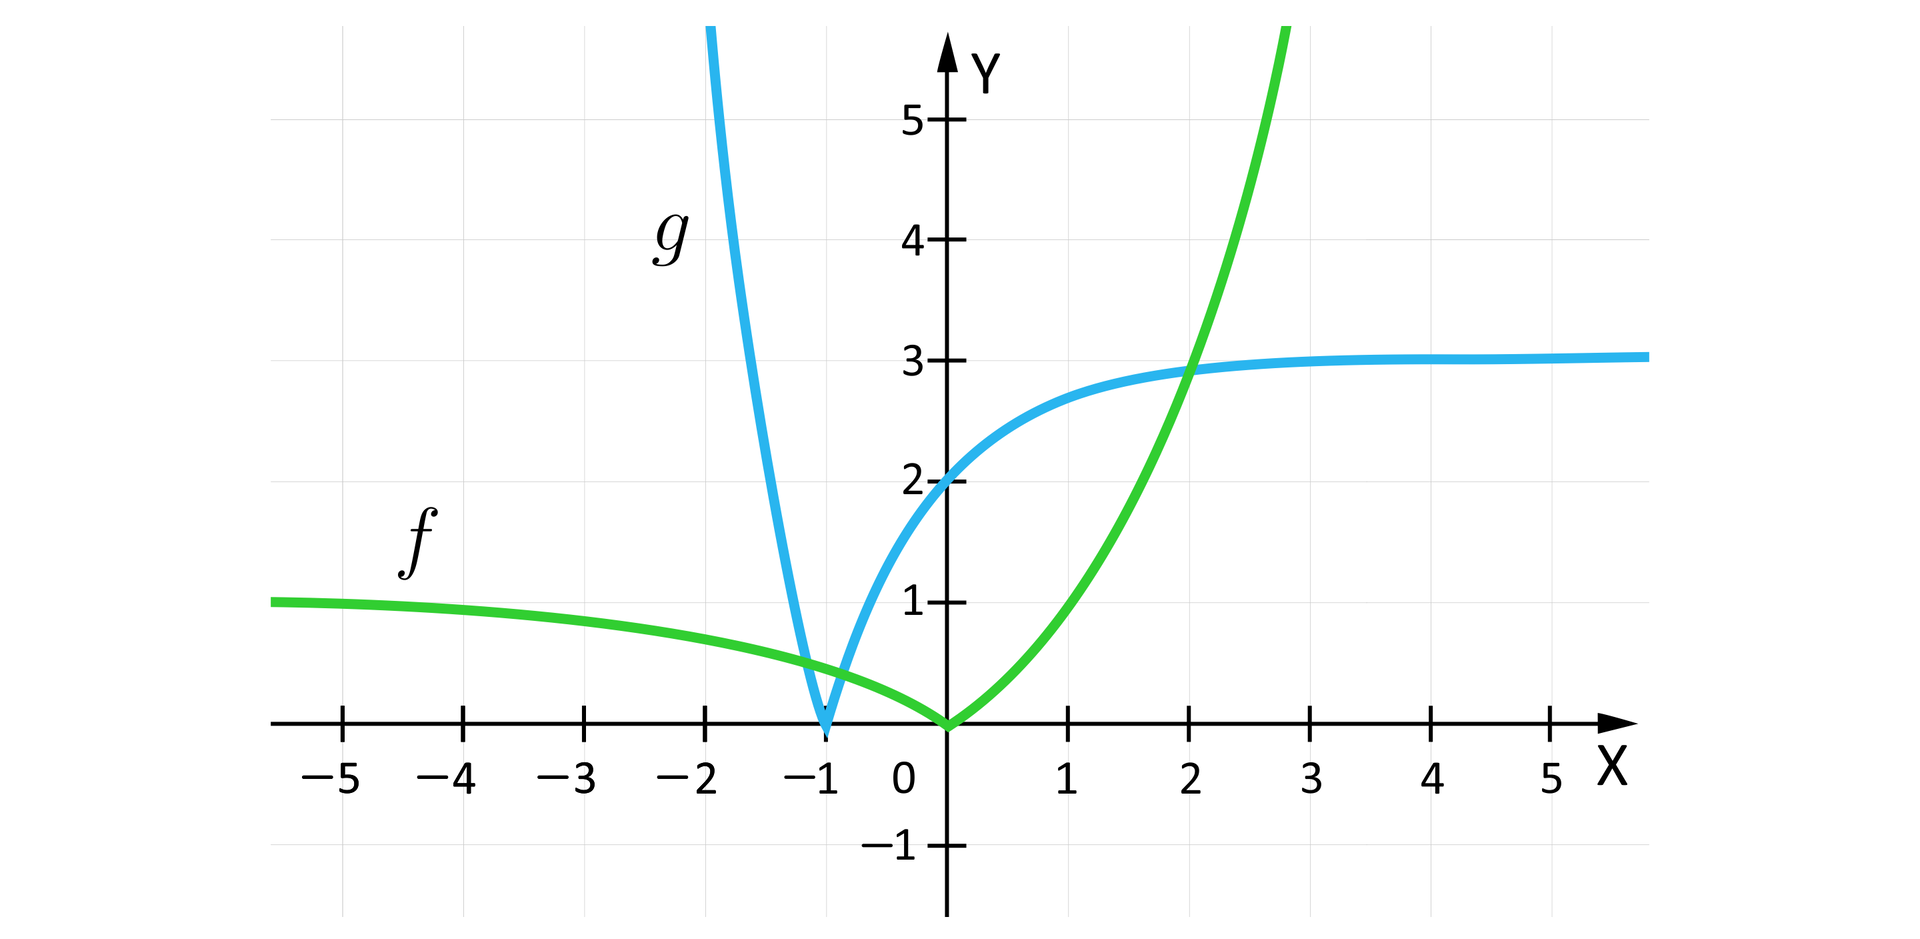 Ilustracja przedstawia układ współrzędnych z poziomą osią X od minus pięciu do pięciu oraz z pionową osią Y od minus jeden do pięciu. Na płaszczyźnie narysowano dwa wykresy. Wykres  funkcji f to krzywa biegnąca niemal poziomo w drugiej ćwiartce. Tu krzywa wypłaszcza się do prostej y równa się jeden. Krzywa łukowato zakręca w dół do punktu nawias 0 średnik 0 zamknięcie nawiasu. Z tego punktu wykres odbija łukowato do w górę w pierwszej ćwiartce i biegnie w niej niemal pionowo. Wykres funkcji g z kolei biegnie w drugiej ćwiartce niemal pionowo w dół do punktu nawias minus jeden średnik 0 zamknięcie nawiasu, skąd łukowato odbija do góry, przecina oś Y w punkcie nawias 0 średnik 2 zamknięcie nawiasu. Wykres funkcji g biegnie dalej w pierwszej ćwiartce niemal poziomo, wypłaszczając się do prostej y równa się trzy.